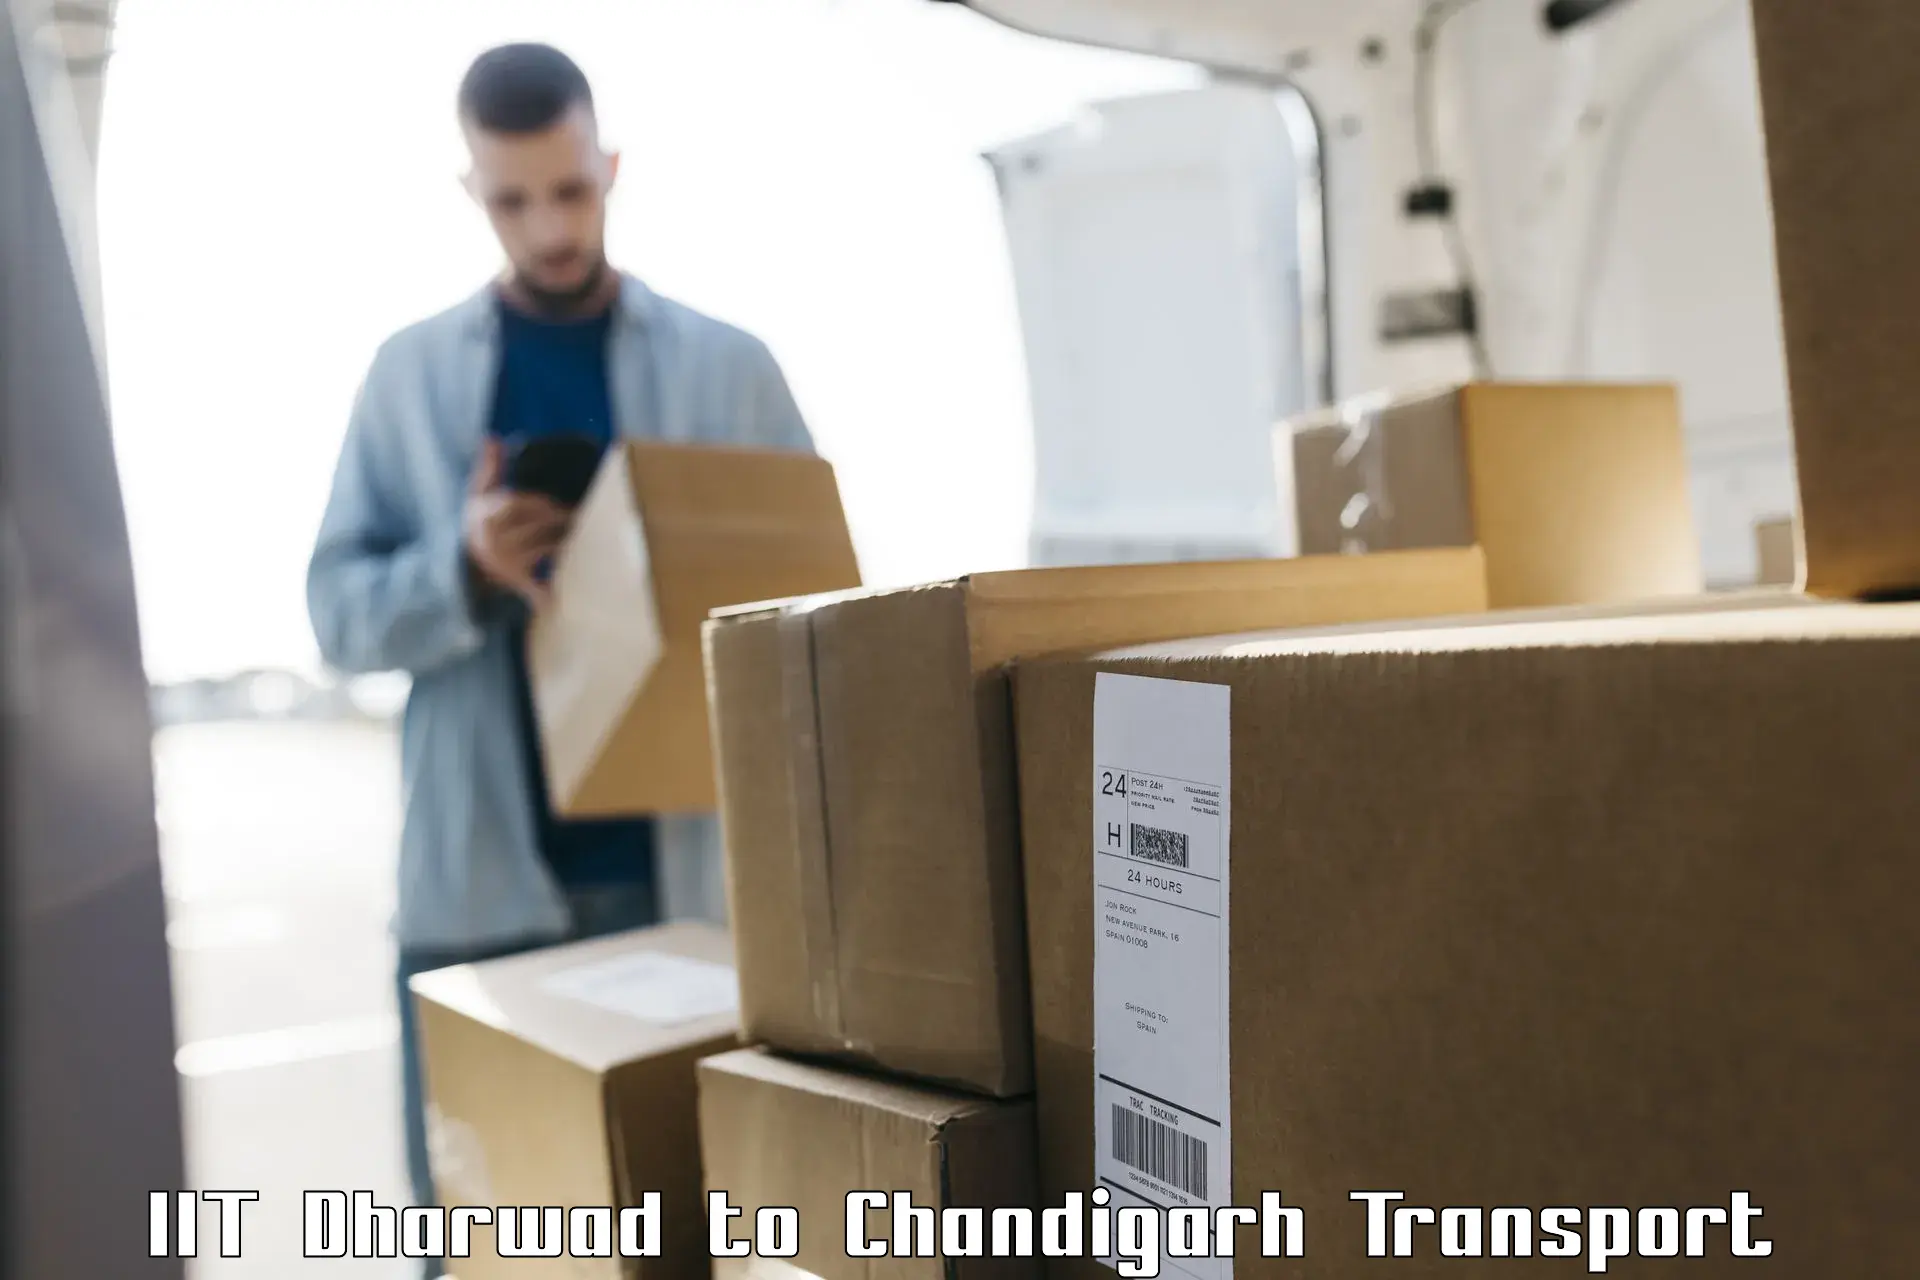 Furniture transport service IIT Dharwad to Chandigarh